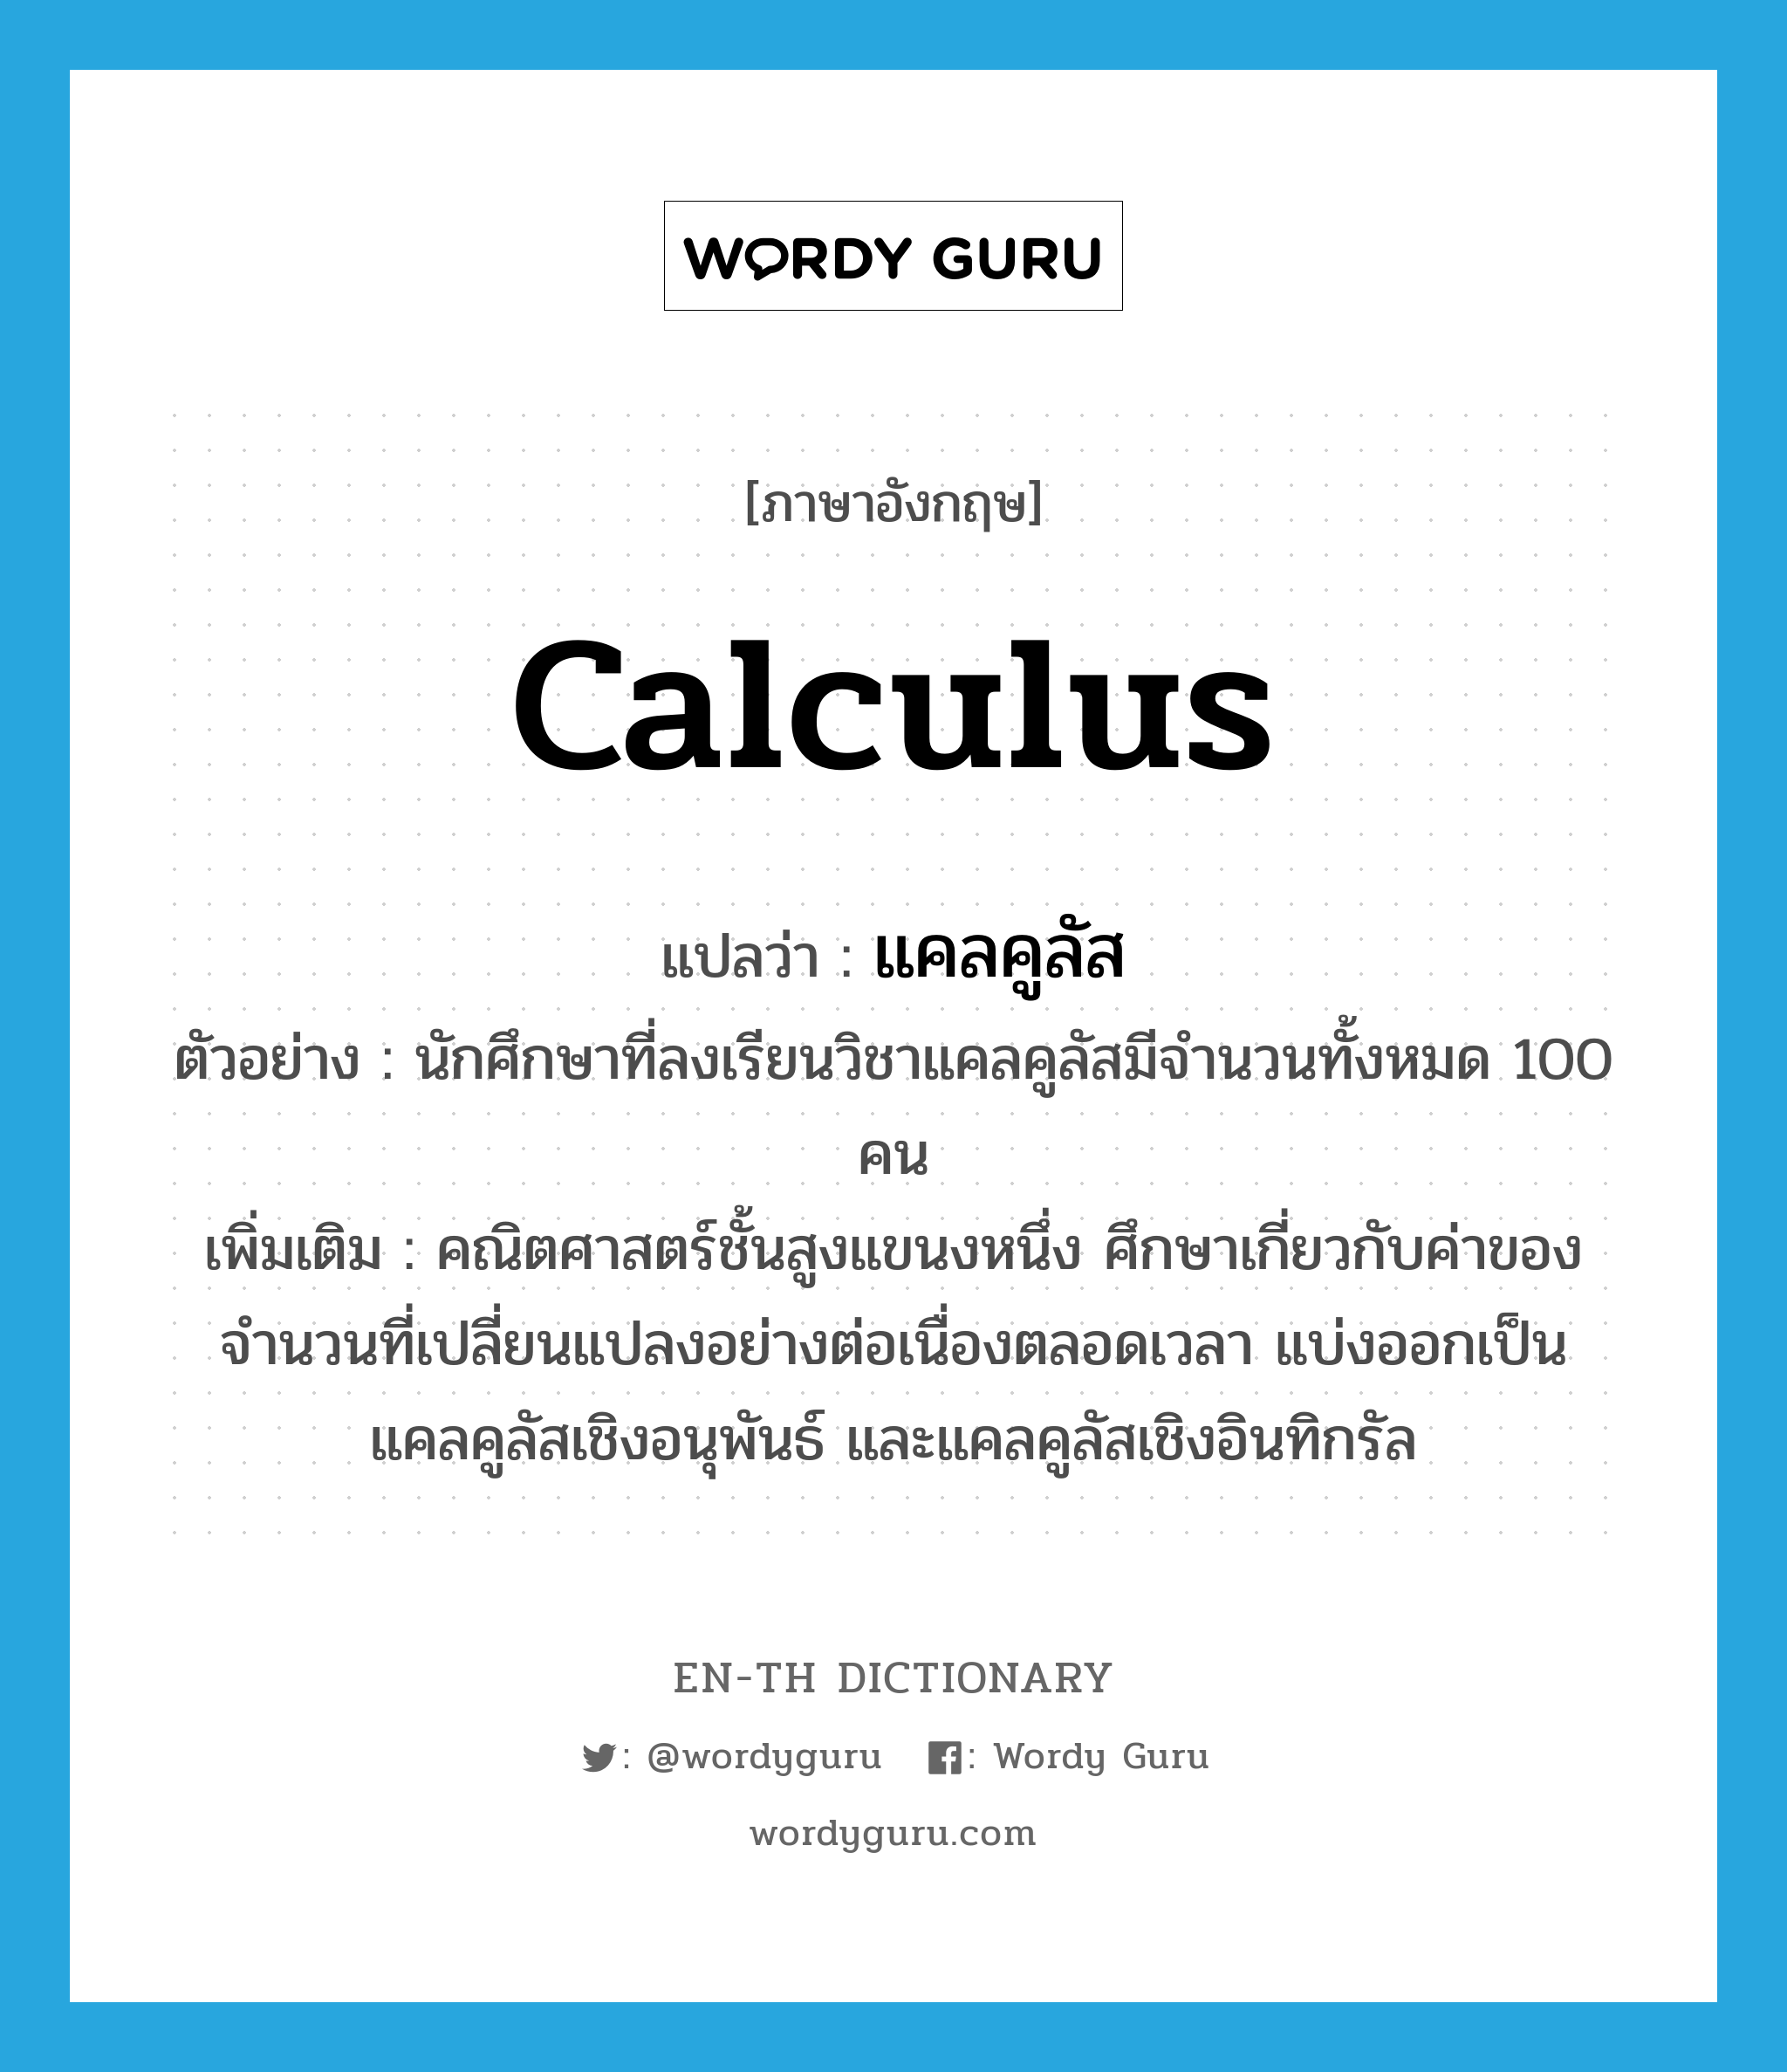 calculus แปลว่า?, คำศัพท์ภาษาอังกฤษ calculus แปลว่า แคลคูลัส ประเภท N ตัวอย่าง นักศึกษาที่ลงเรียนวิชาแคลคูลัสมีจำนวนทั้งหมด 100 คน เพิ่มเติม คณิตศาสตร์ชั้นสูงแขนงหนึ่ง ศึกษาเกี่ยวกับค่าของจำนวนที่เปลี่ยนแปลงอย่างต่อเนื่องตลอดเวลา แบ่งออกเป็นแคลคูลัสเชิงอนุพันธ์ และแคลคูลัสเชิงอินทิกรัล หมวด N